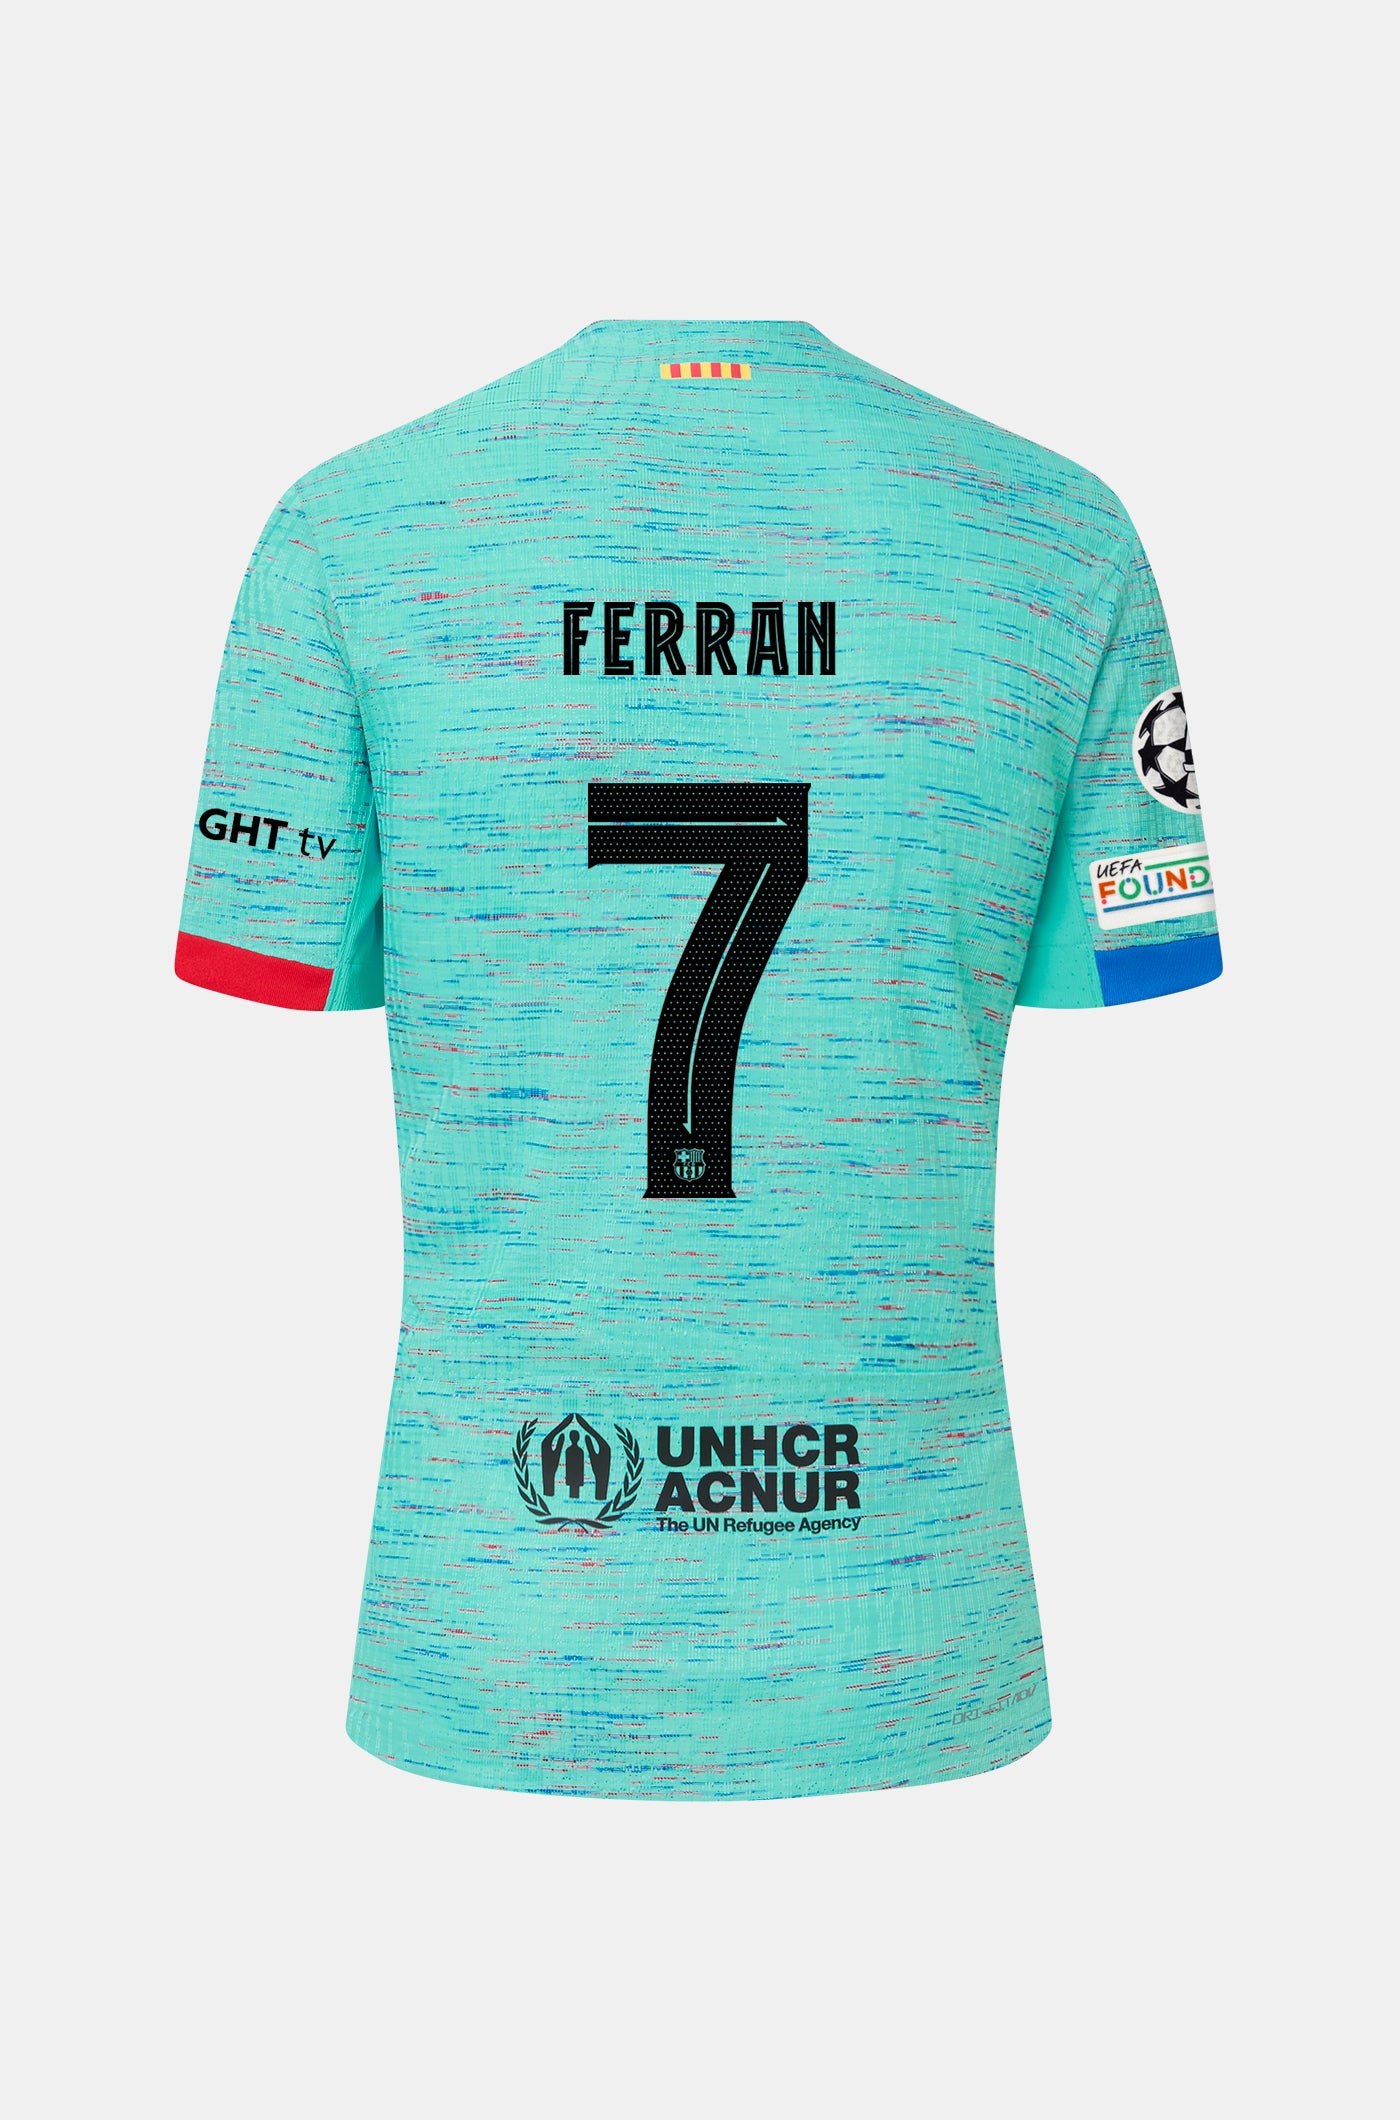 UCL FC Barcelona third shirt 23/24 Player’s Edition - FERRAN